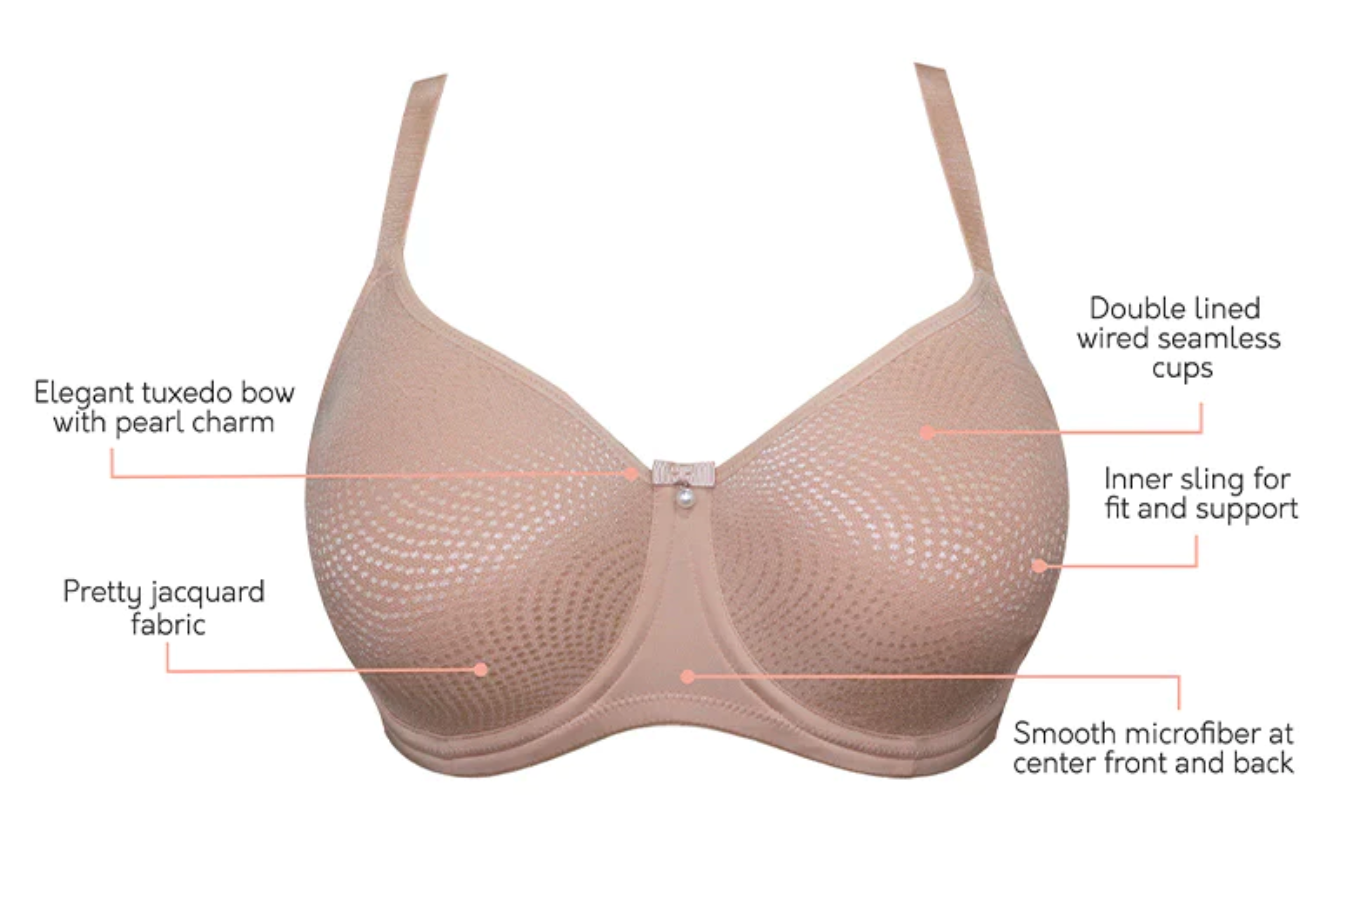 Womens Pink Minimizer Bras - Underwear, Clothing